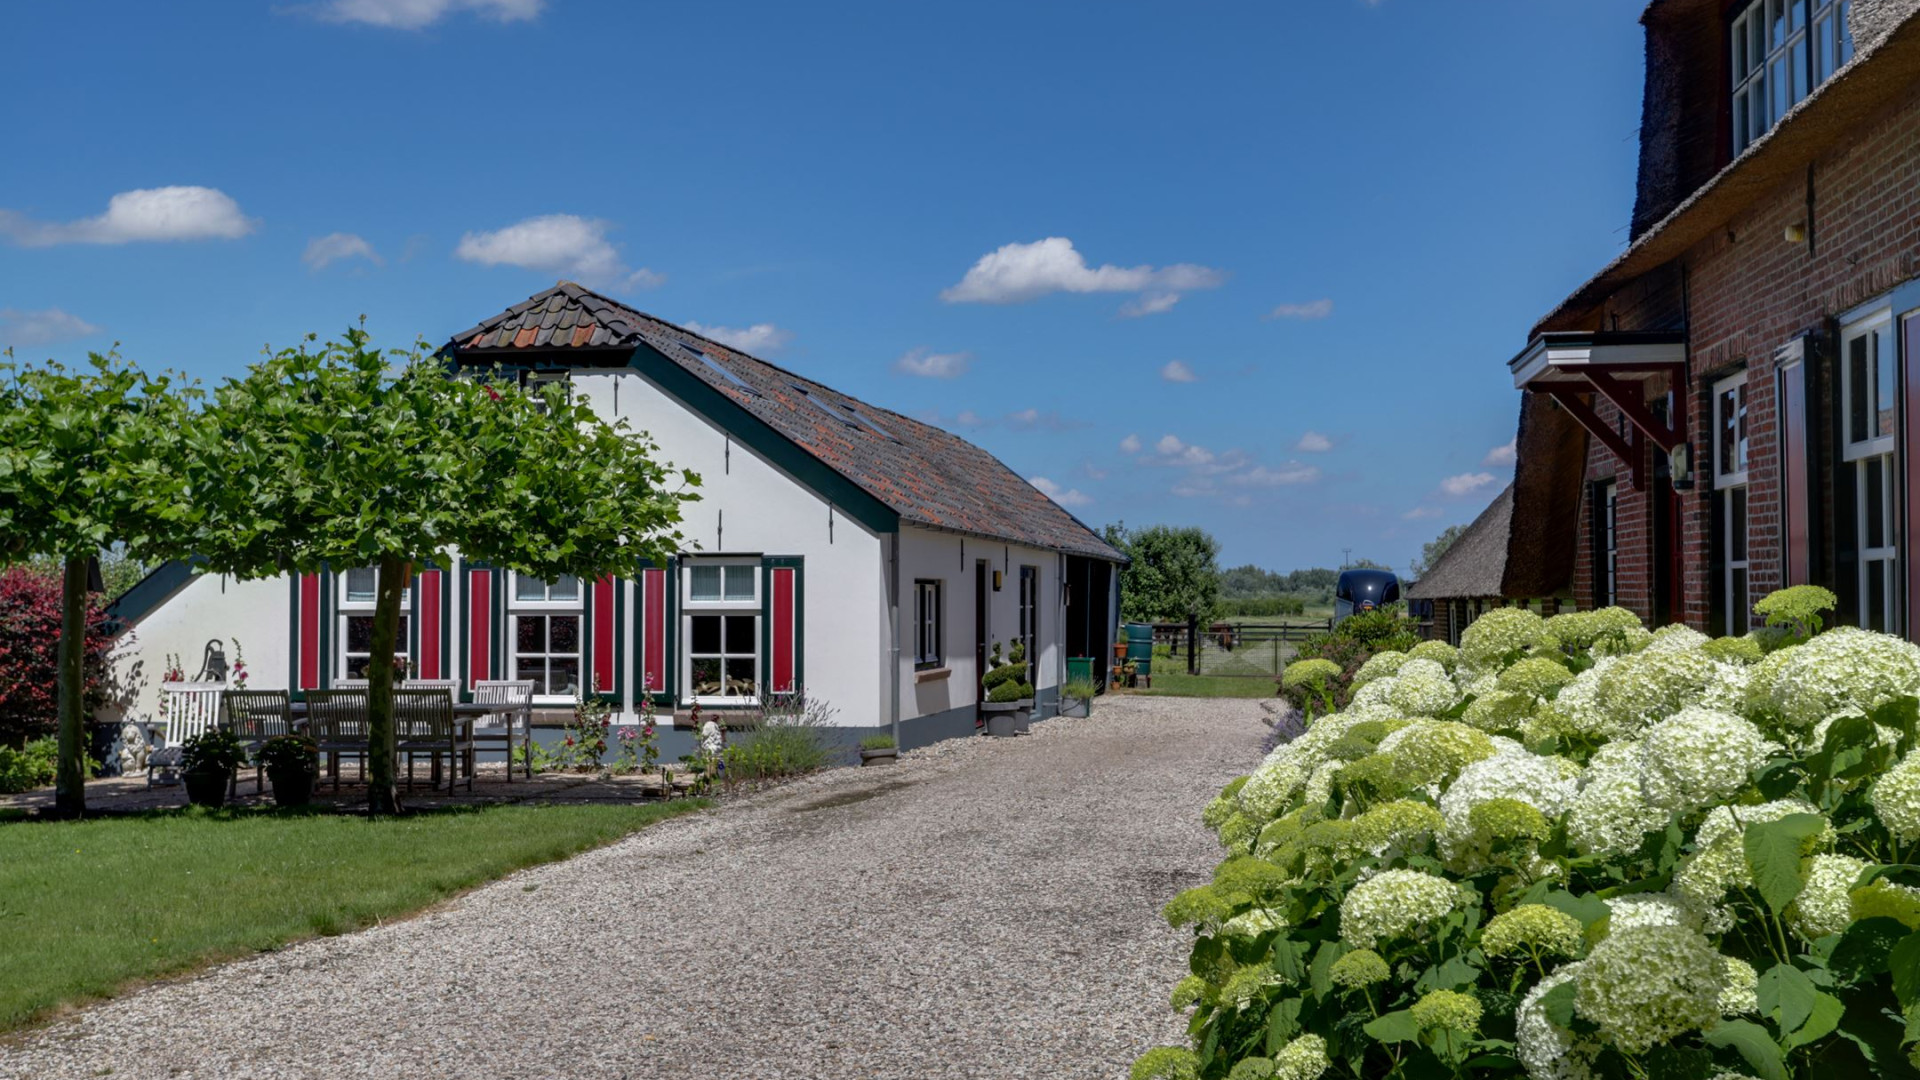 Ivo Niehe koopt deze prachtige woonboerderij. Zie foto's 32